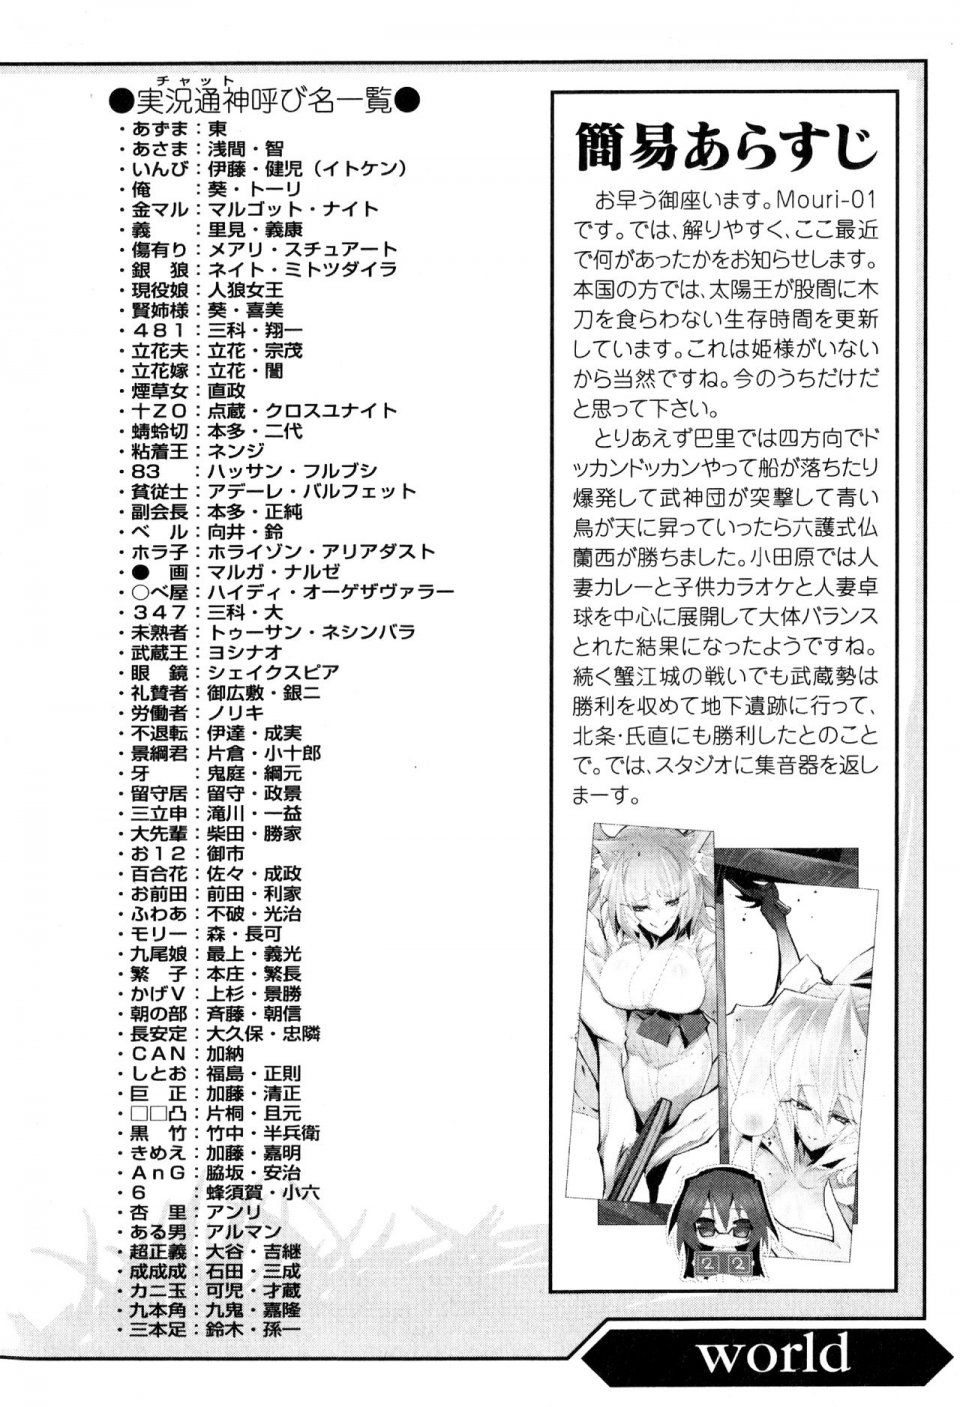 Kyoukai Senjou no Horizon LN Vol 16(7A) - Photo #16